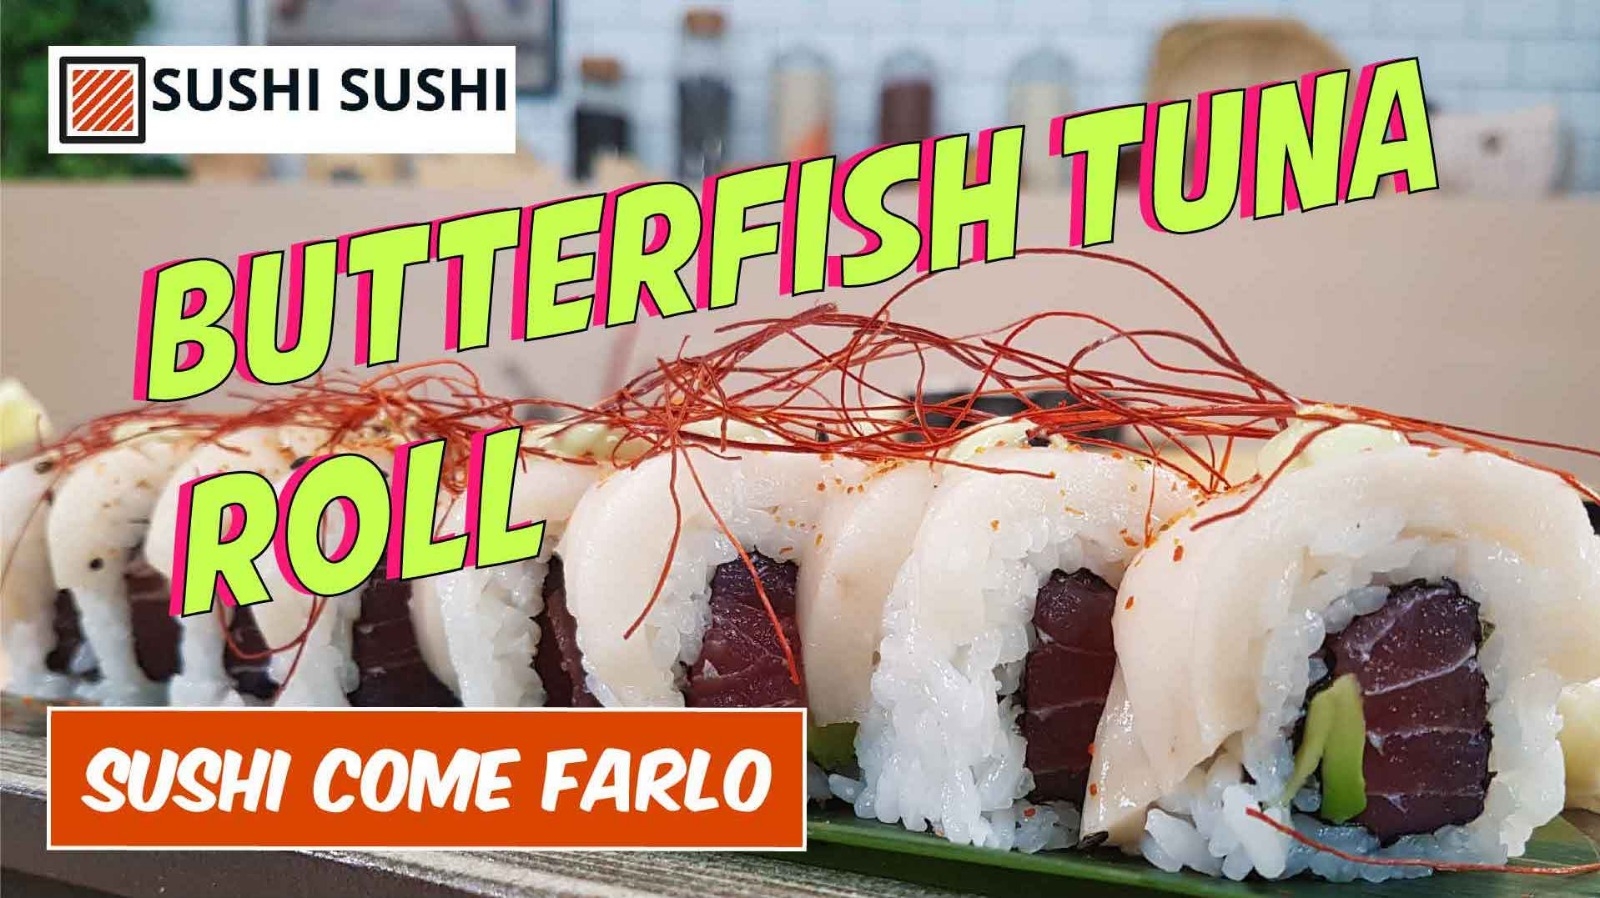 Butterfish Tuna sushi roll